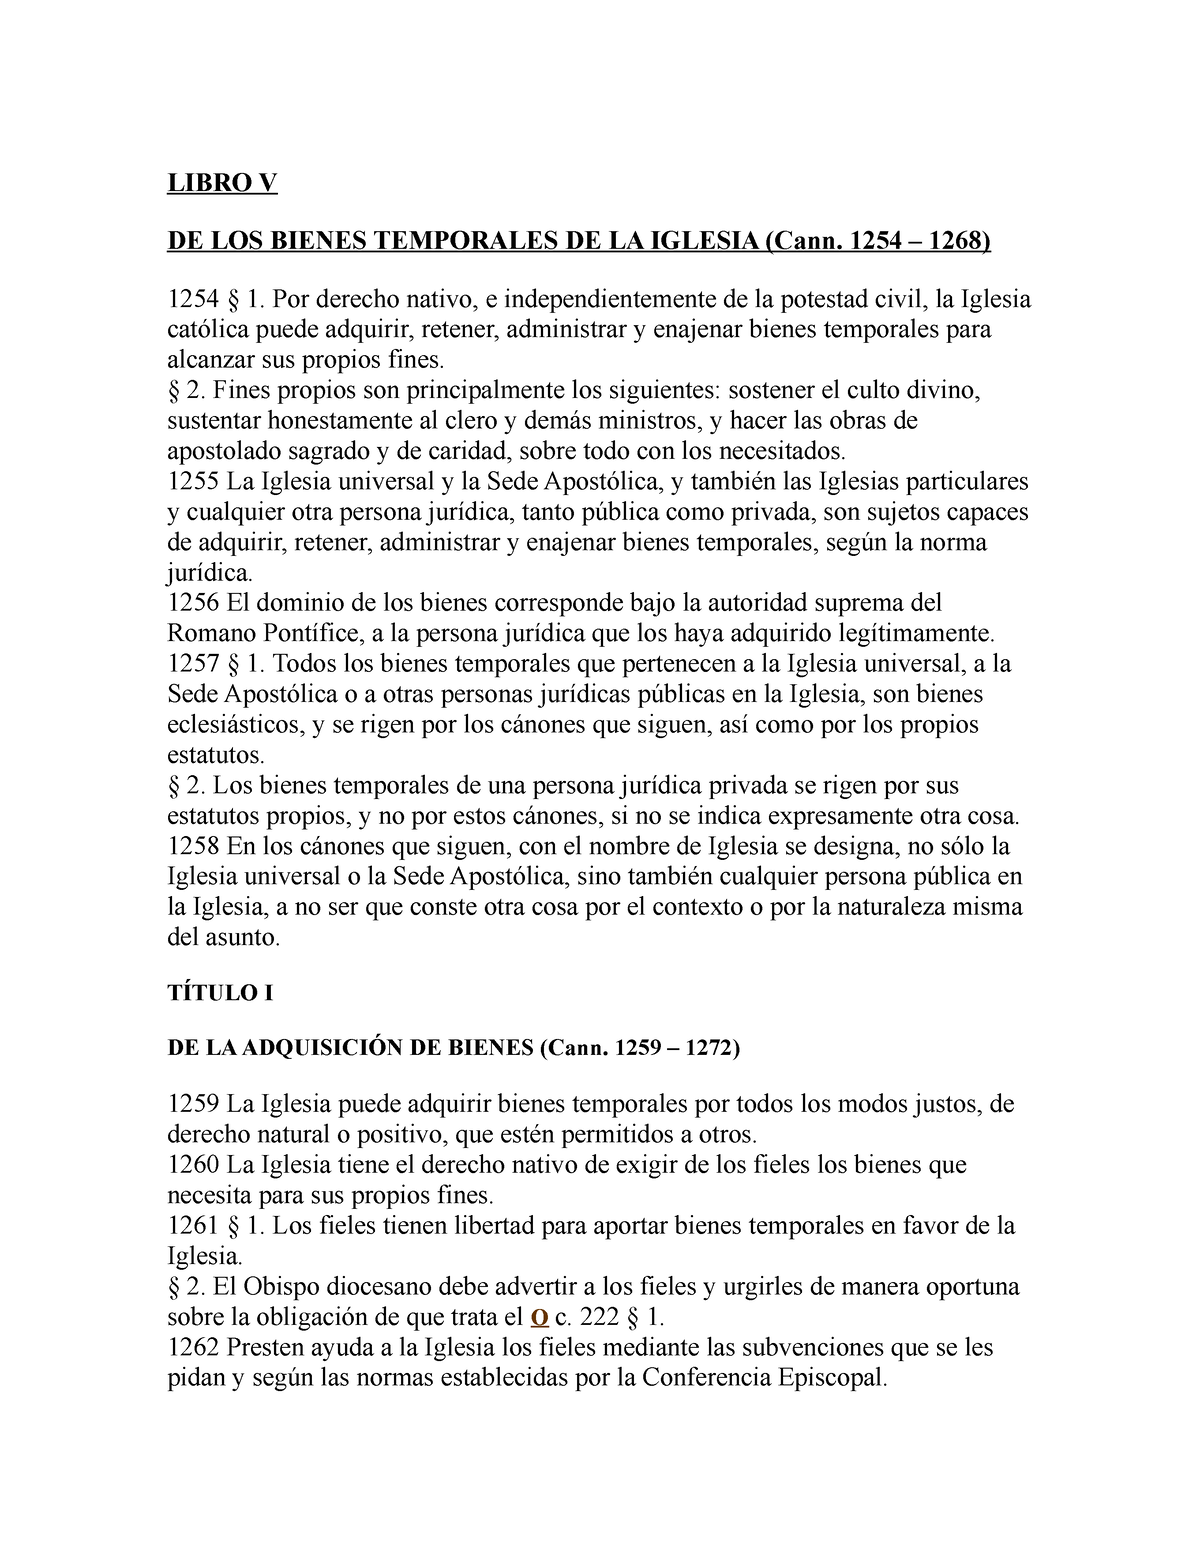 Libro V codigo derecho canonico - LIBRO V DE LOS BIENES TEMPORALES DE LA  IGLESIA (Cann. 1254 – 1268) - Studocu